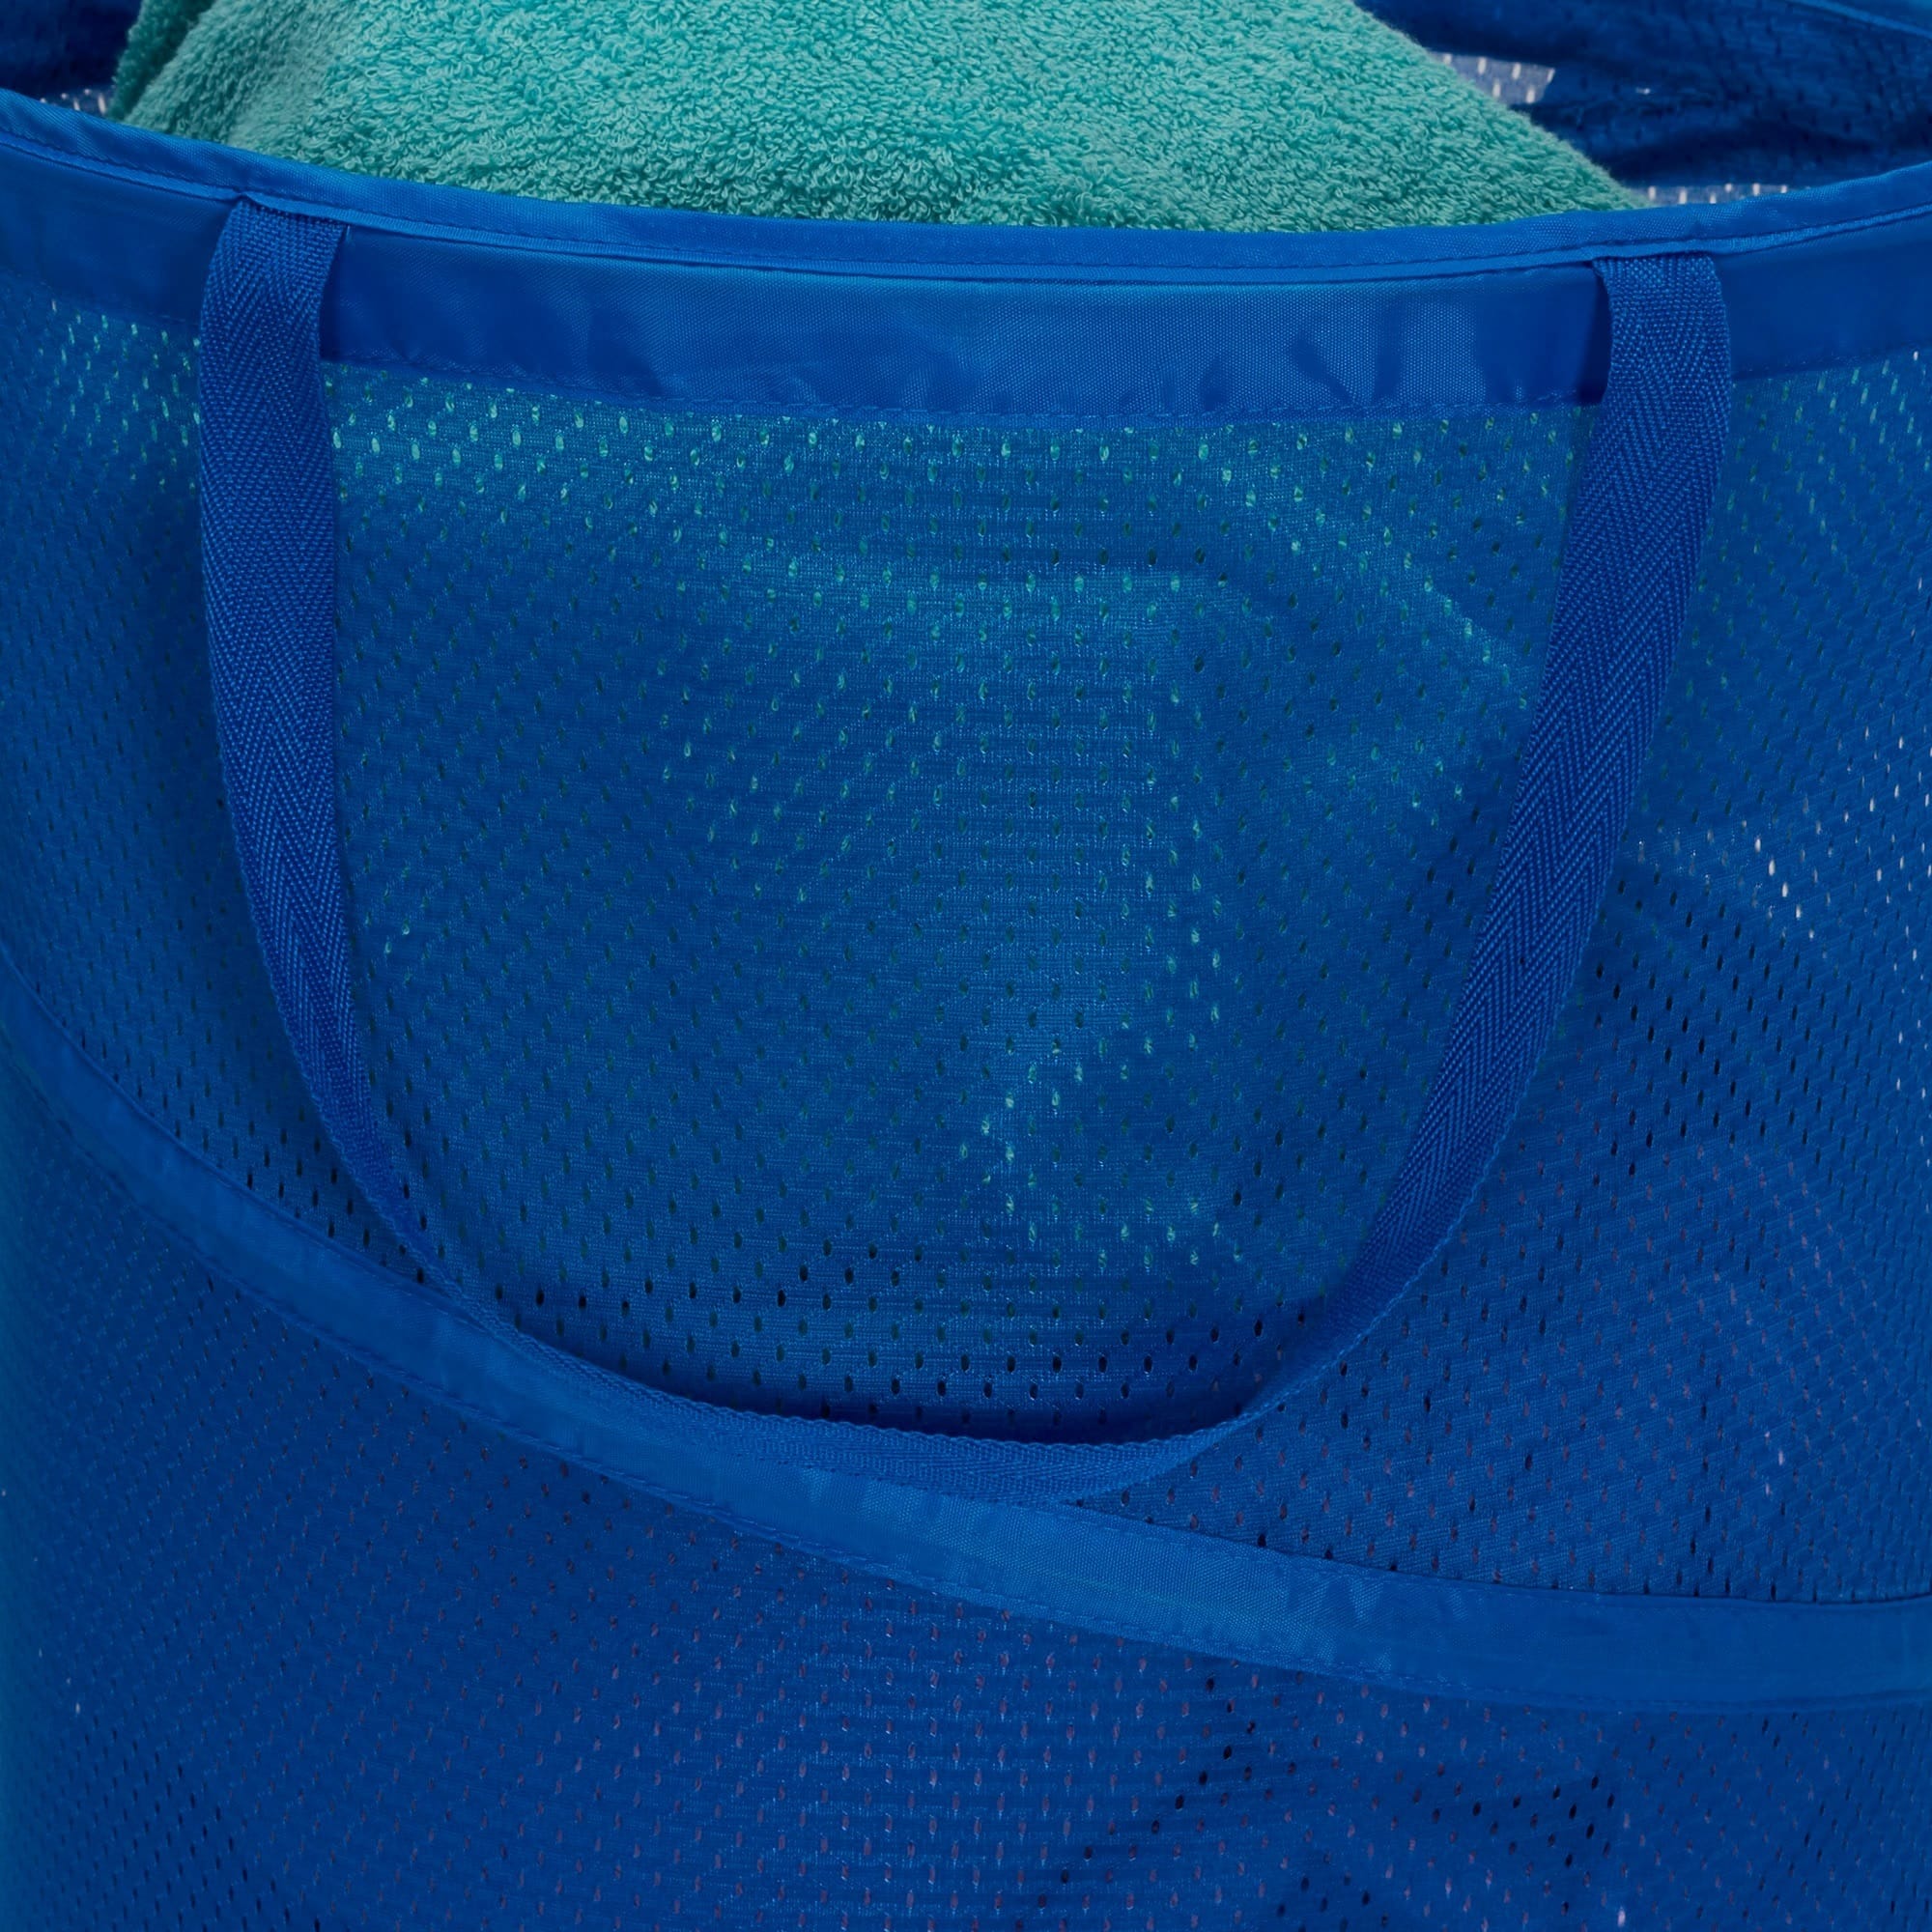 NY PRADA MARFA Laundry Bag By Michelle Parascandolo - 28 x 36